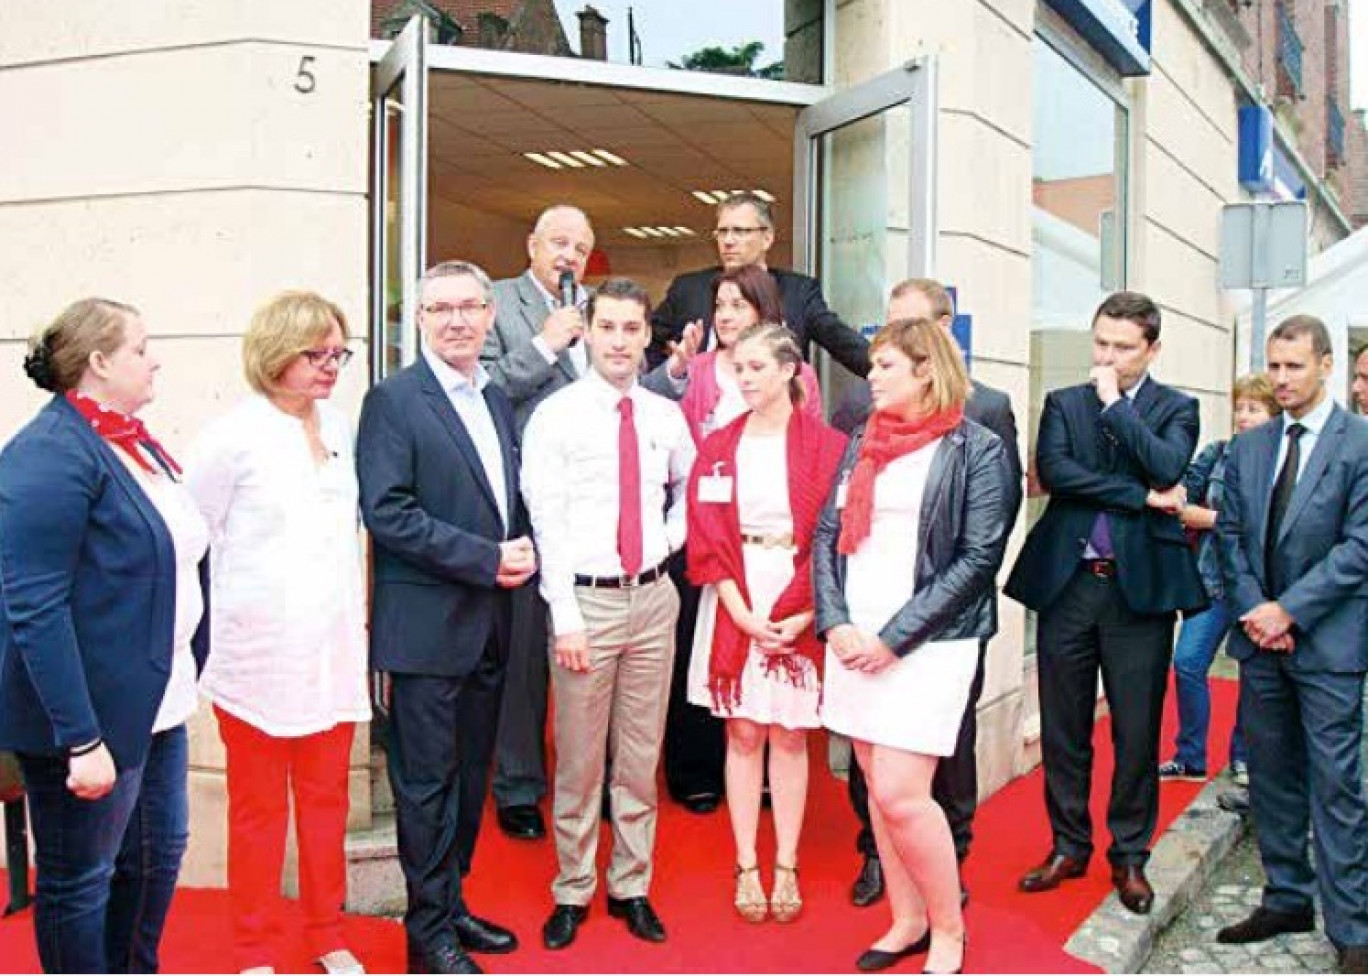 Thierry Méresse entouré de ses associés et collaborateurs de Noyon présente les nouveaux services de banque aux invités.